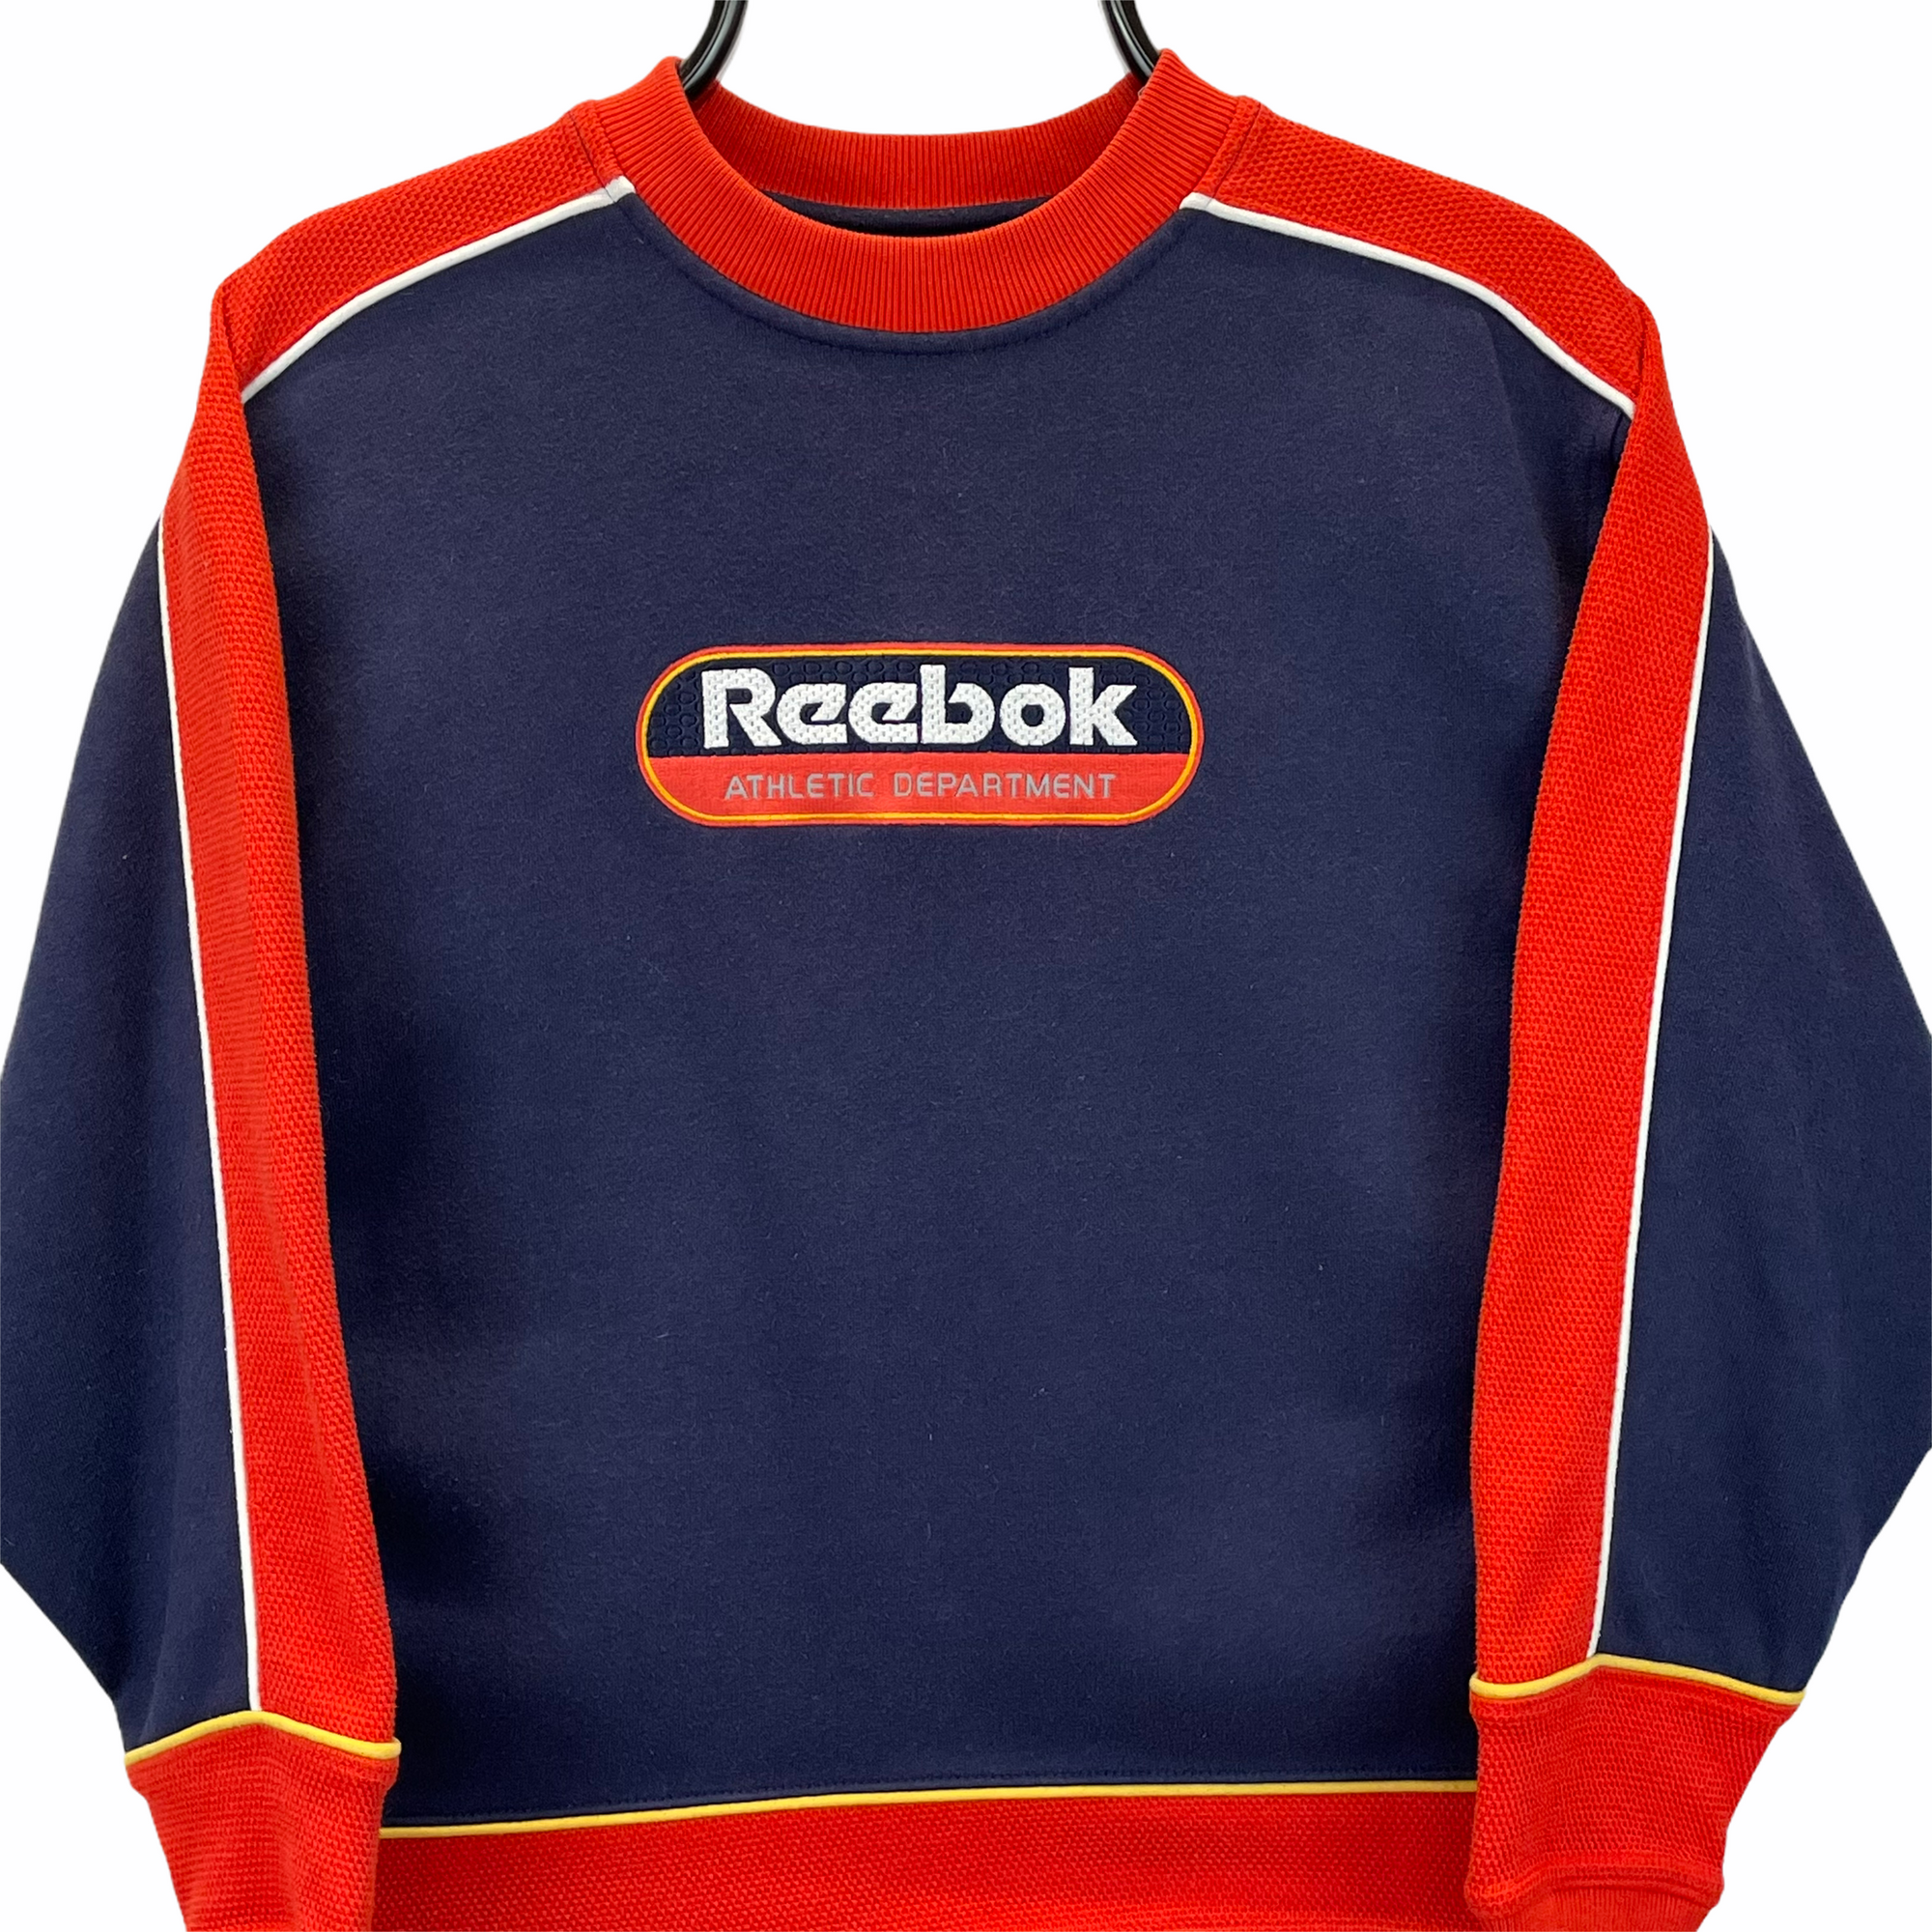 Vintage 90s Reebok Spellout Sweatshirt in Navy & Red - Men's XS/Women's Small